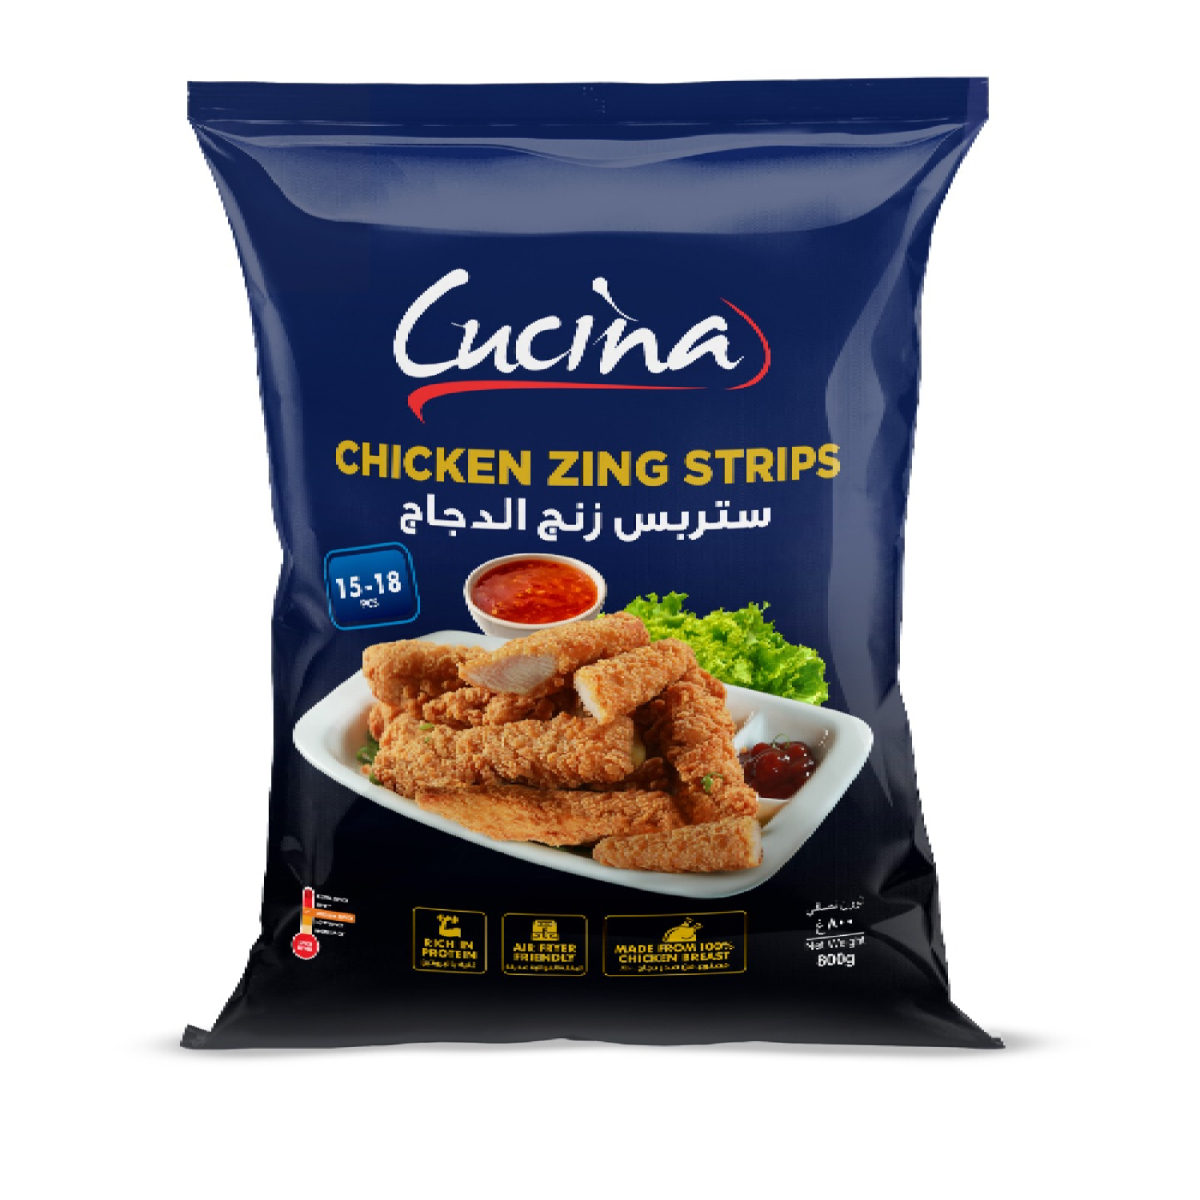 Buy Cucina Chicken Zing Strips 15-18 pcs 800 g Online at Best Price | Zingers | Lulu UAE in UAE